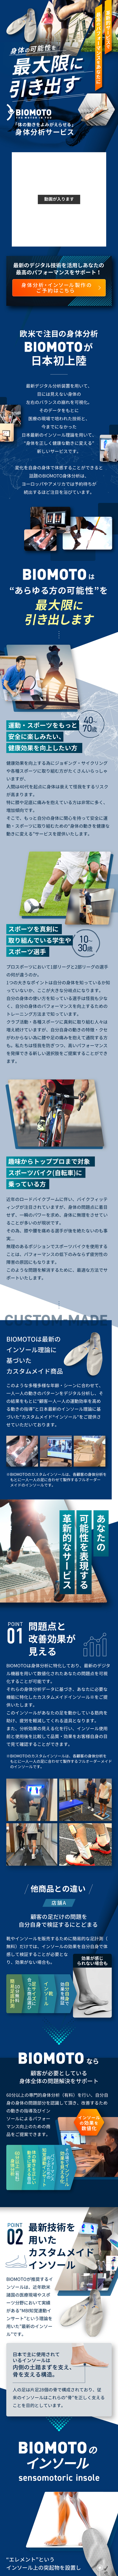 身体分析サービス BIOMOTO_sp_1